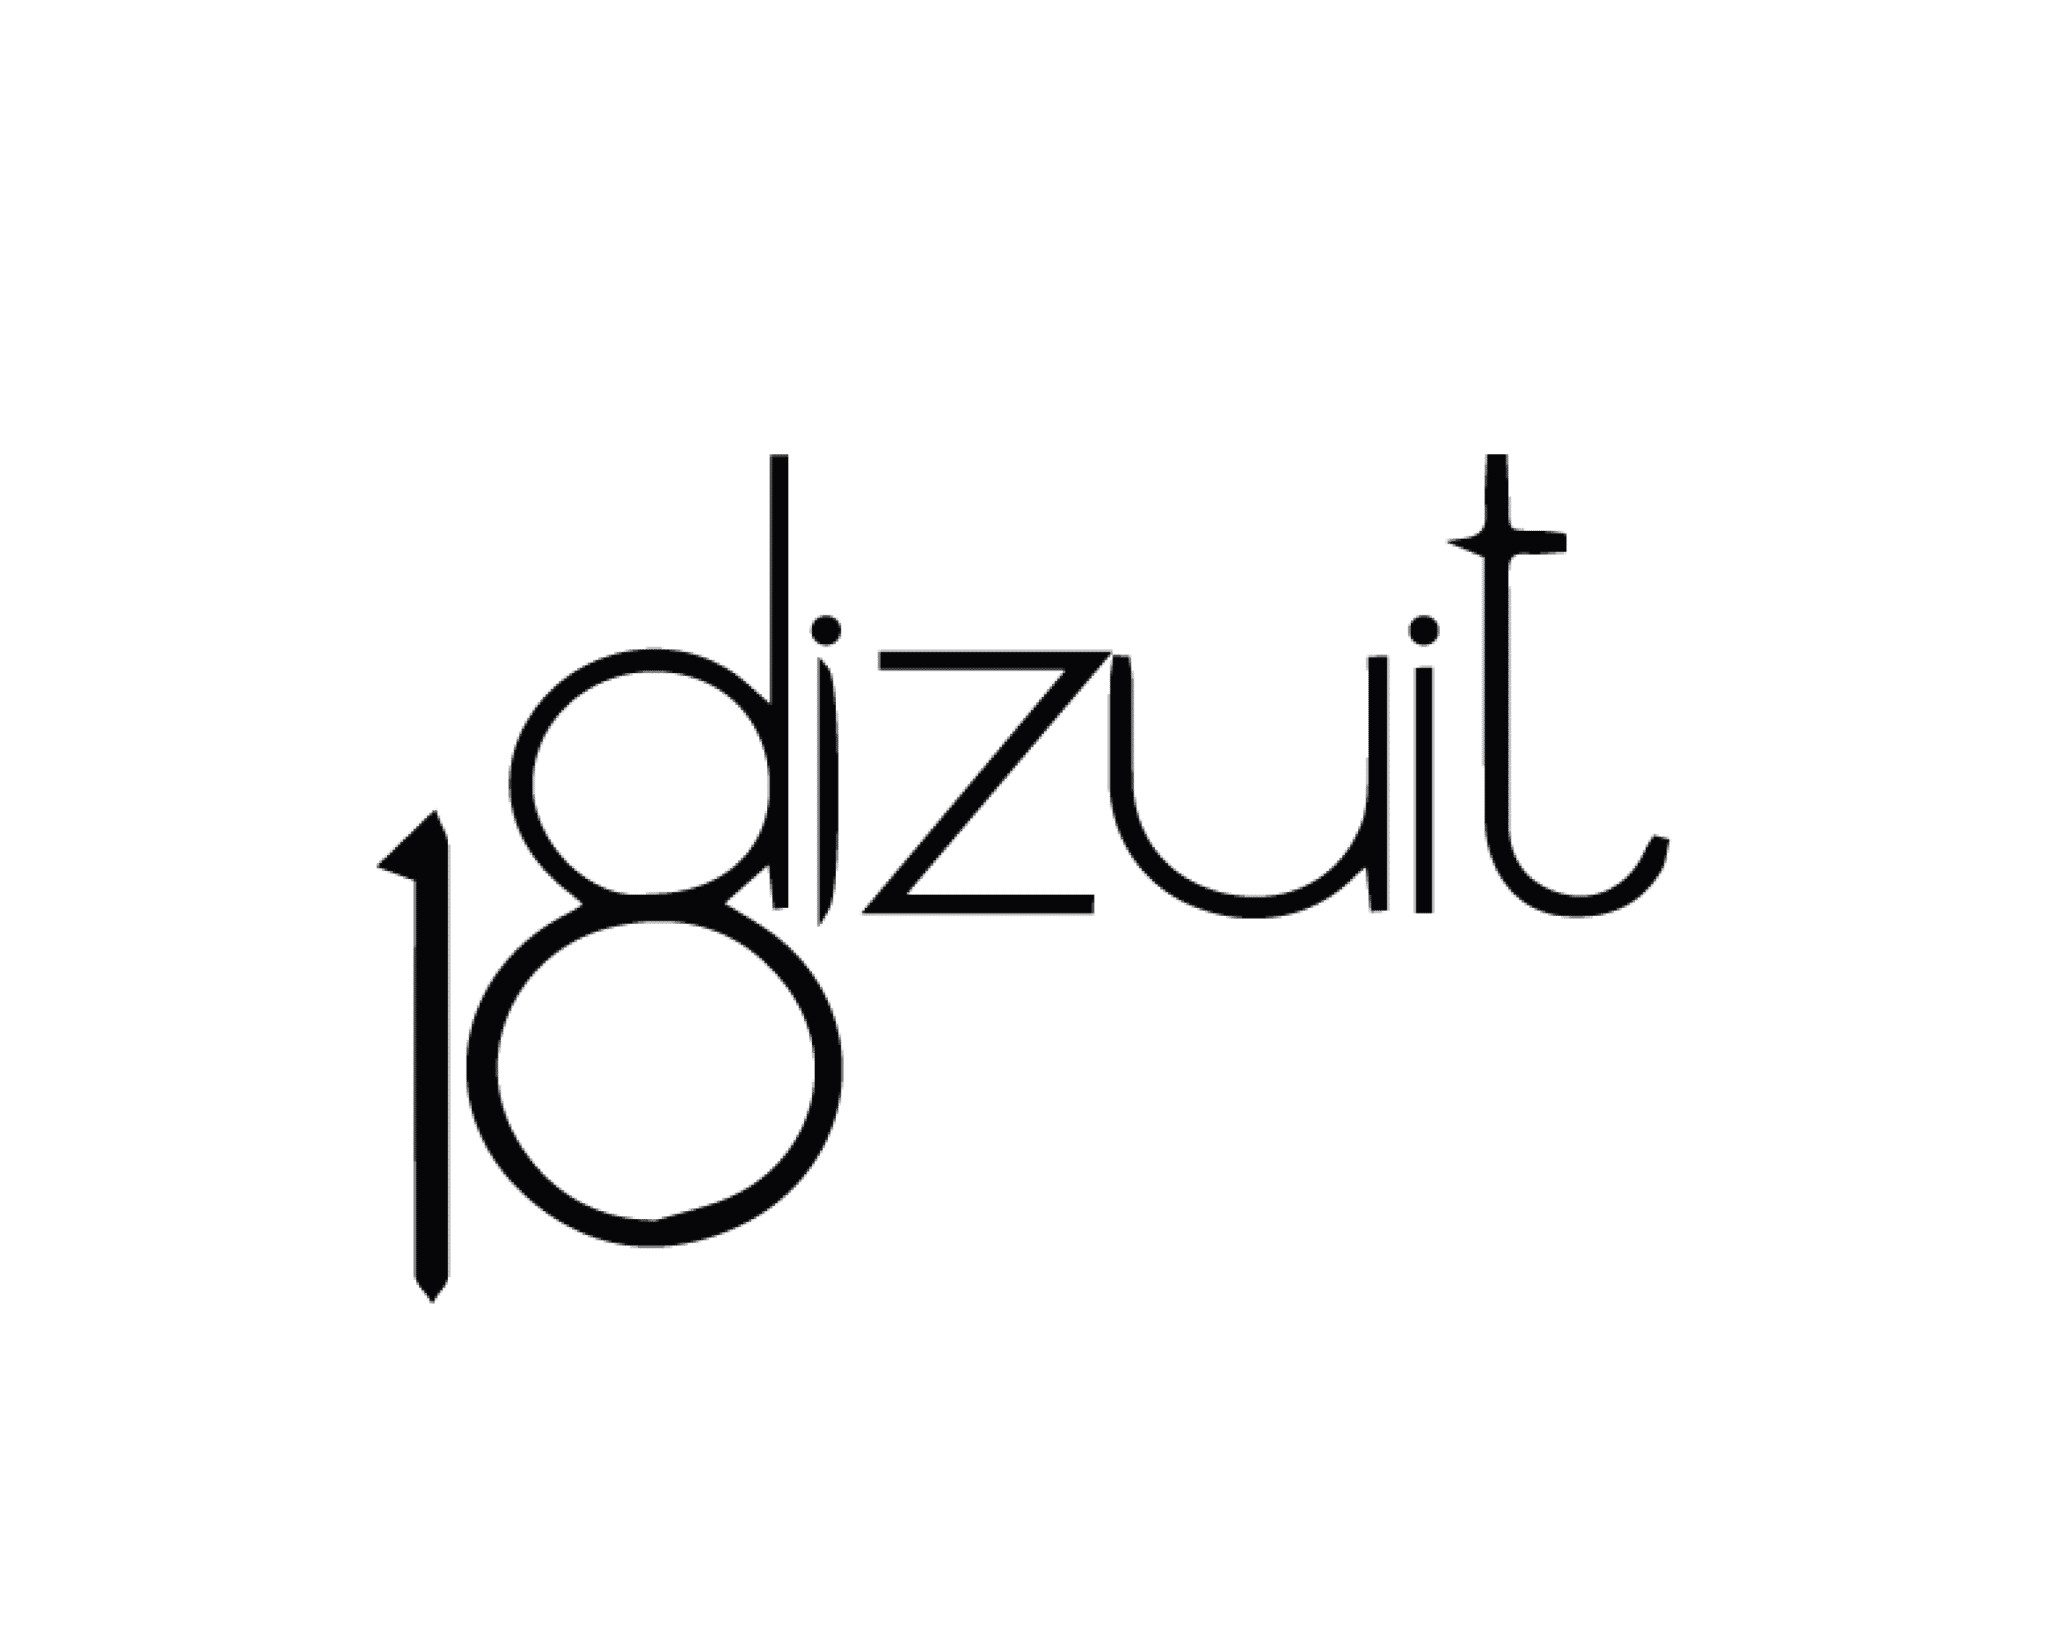 Boutique Dizhuit